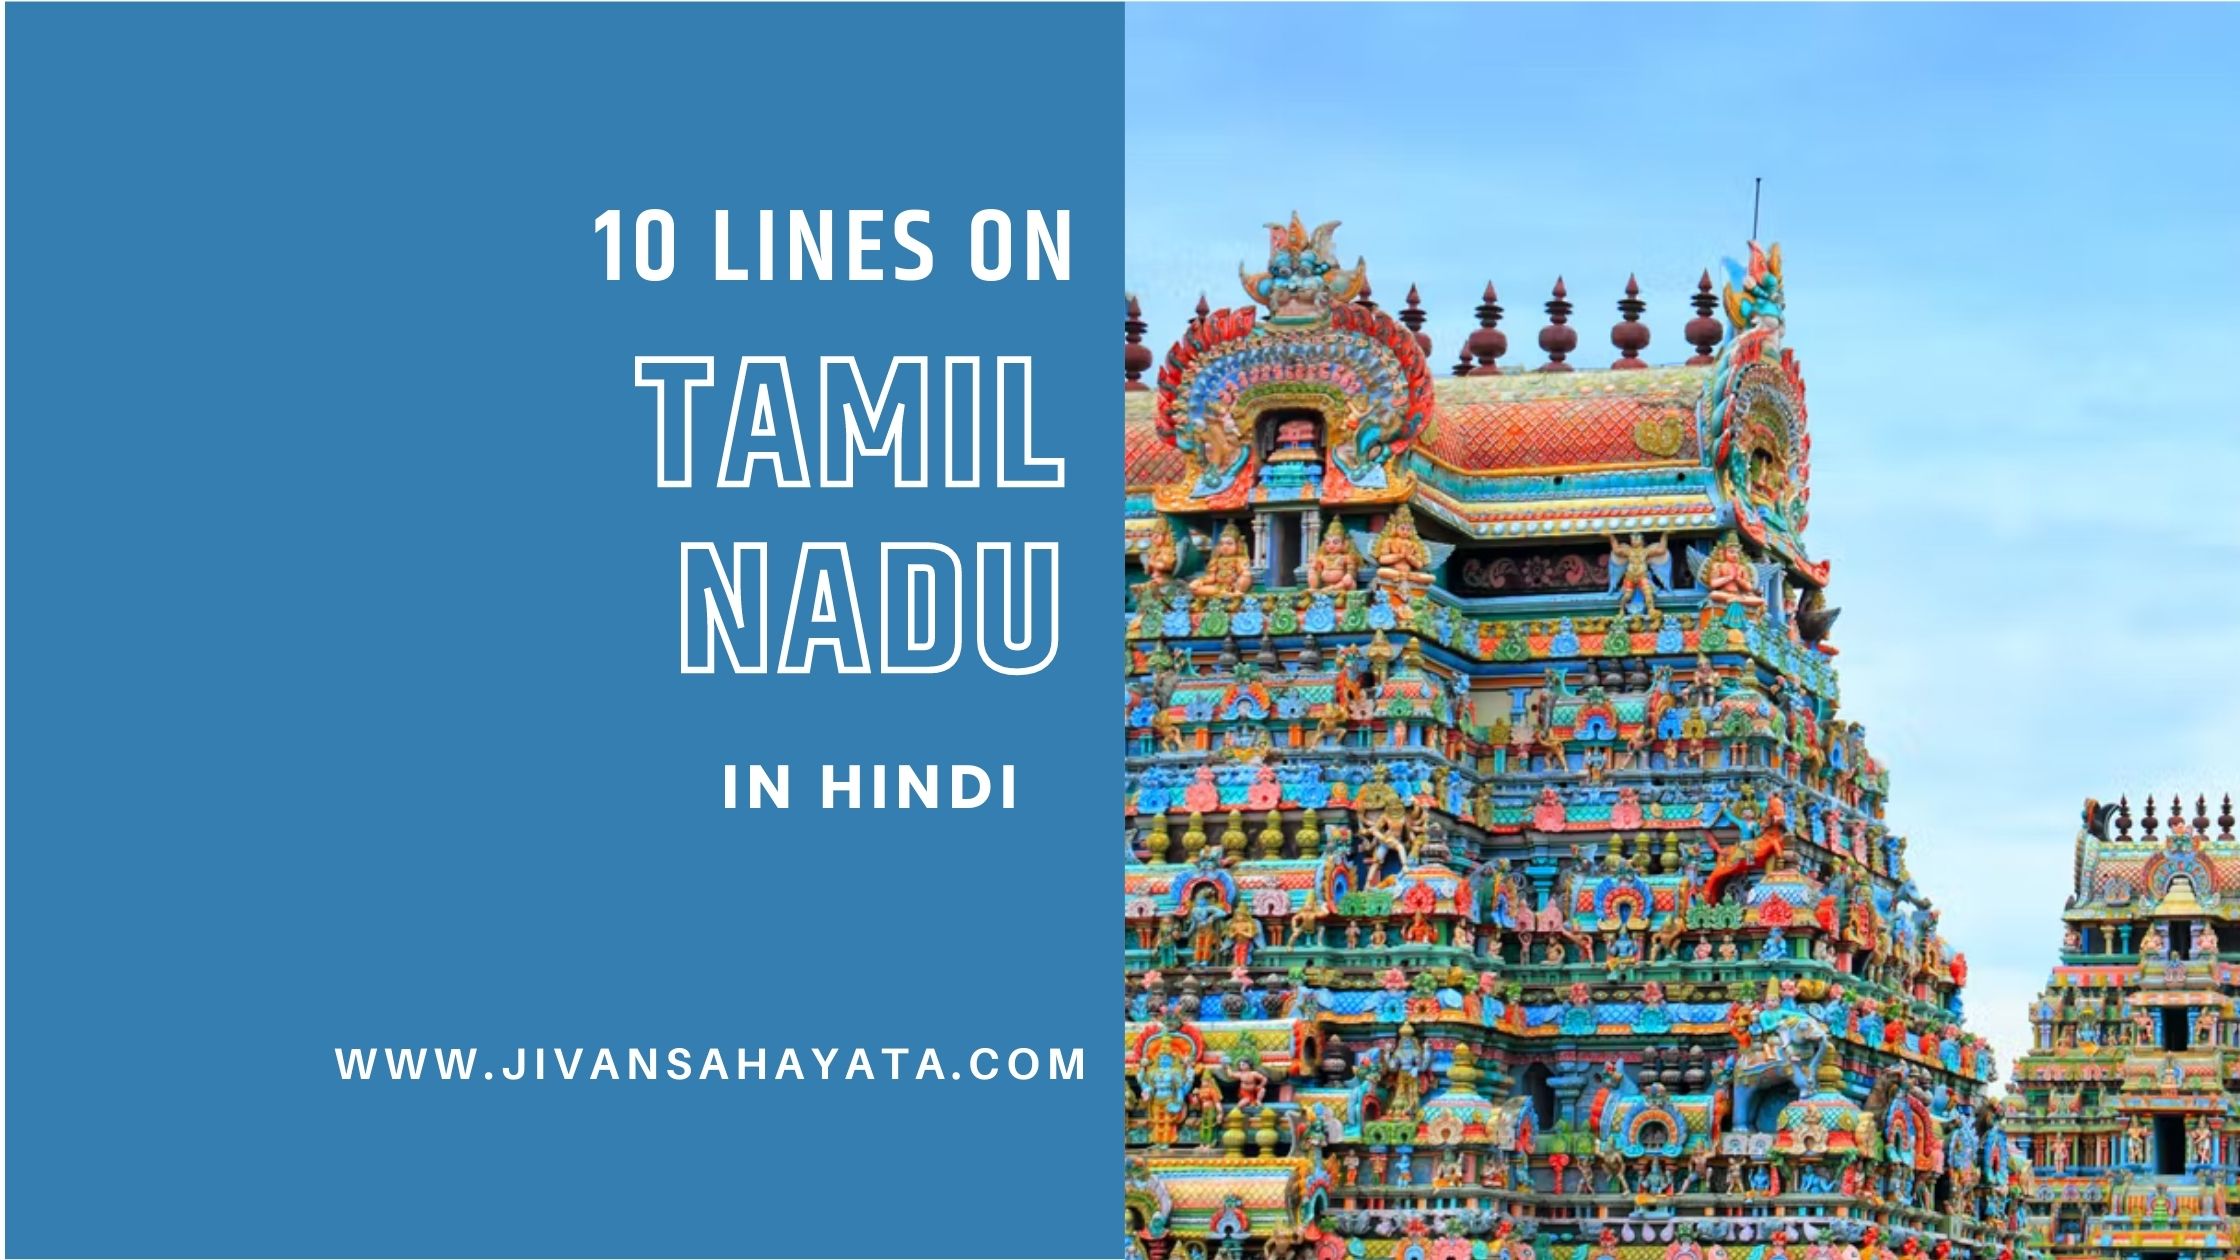 10 lines on Tamil Nadu in Hindi